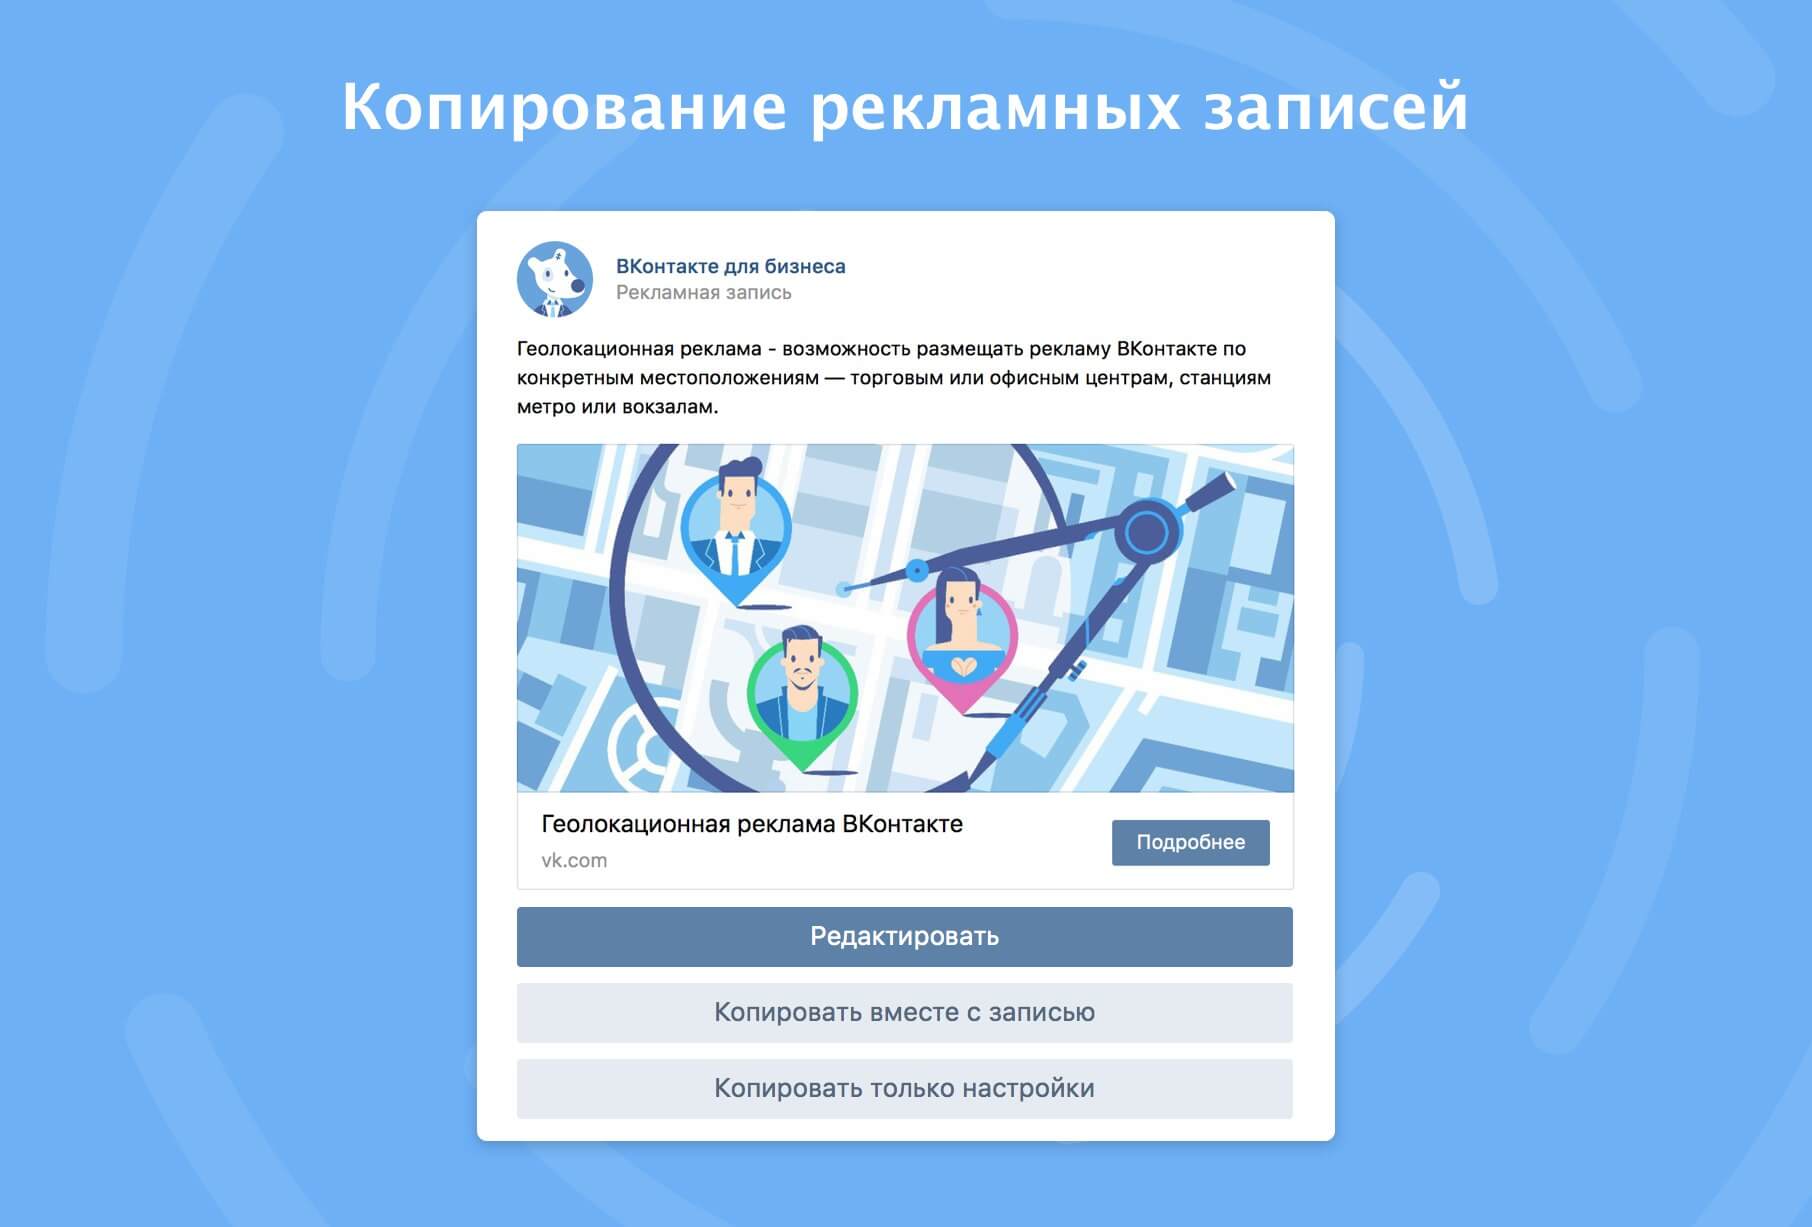 ВКонтакте появилась возможность копировать рекламные записи и их настройки